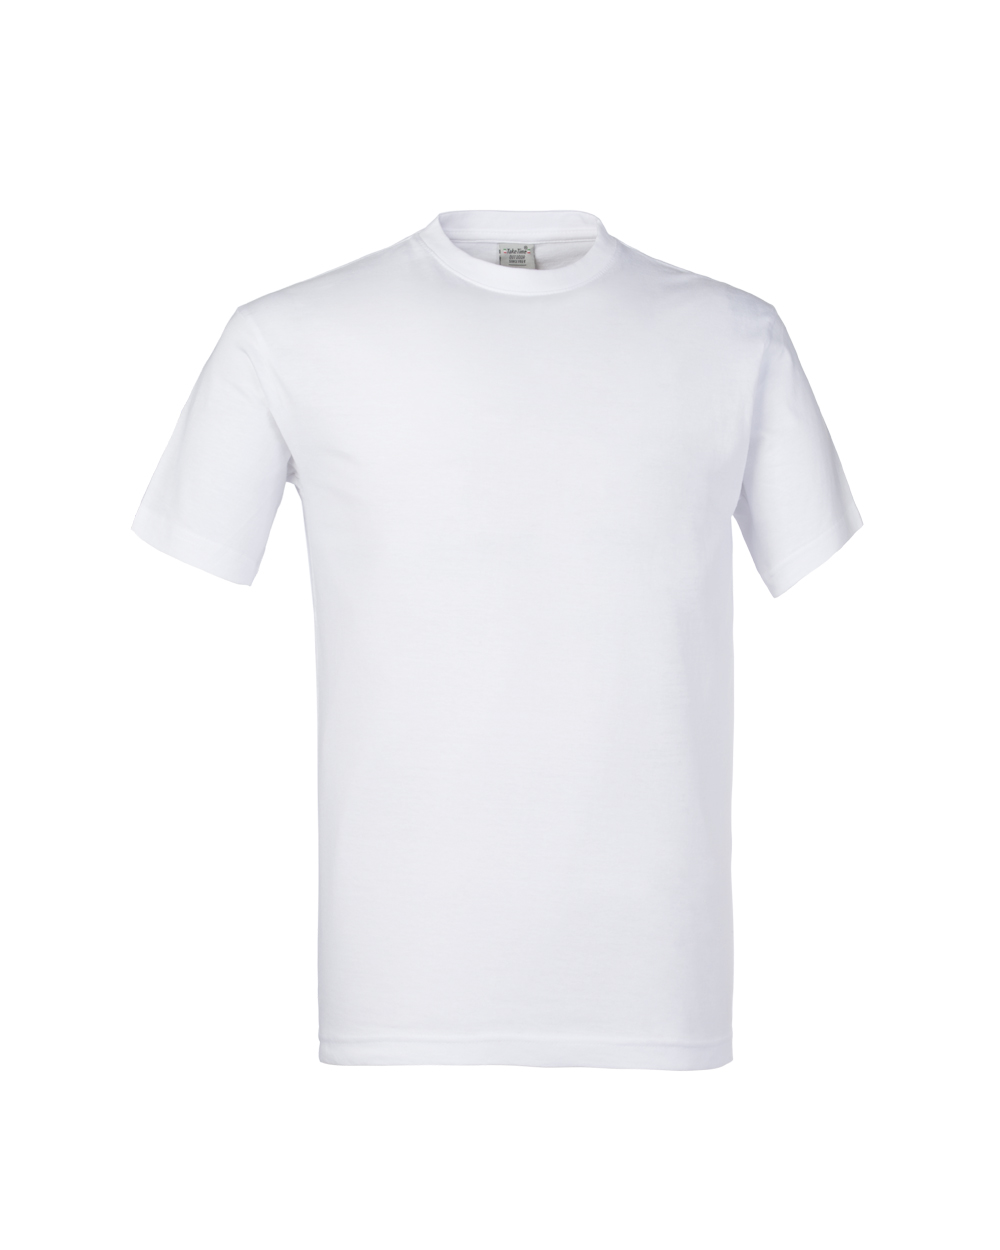 Tshirt m/c col.bianco 100%cot.